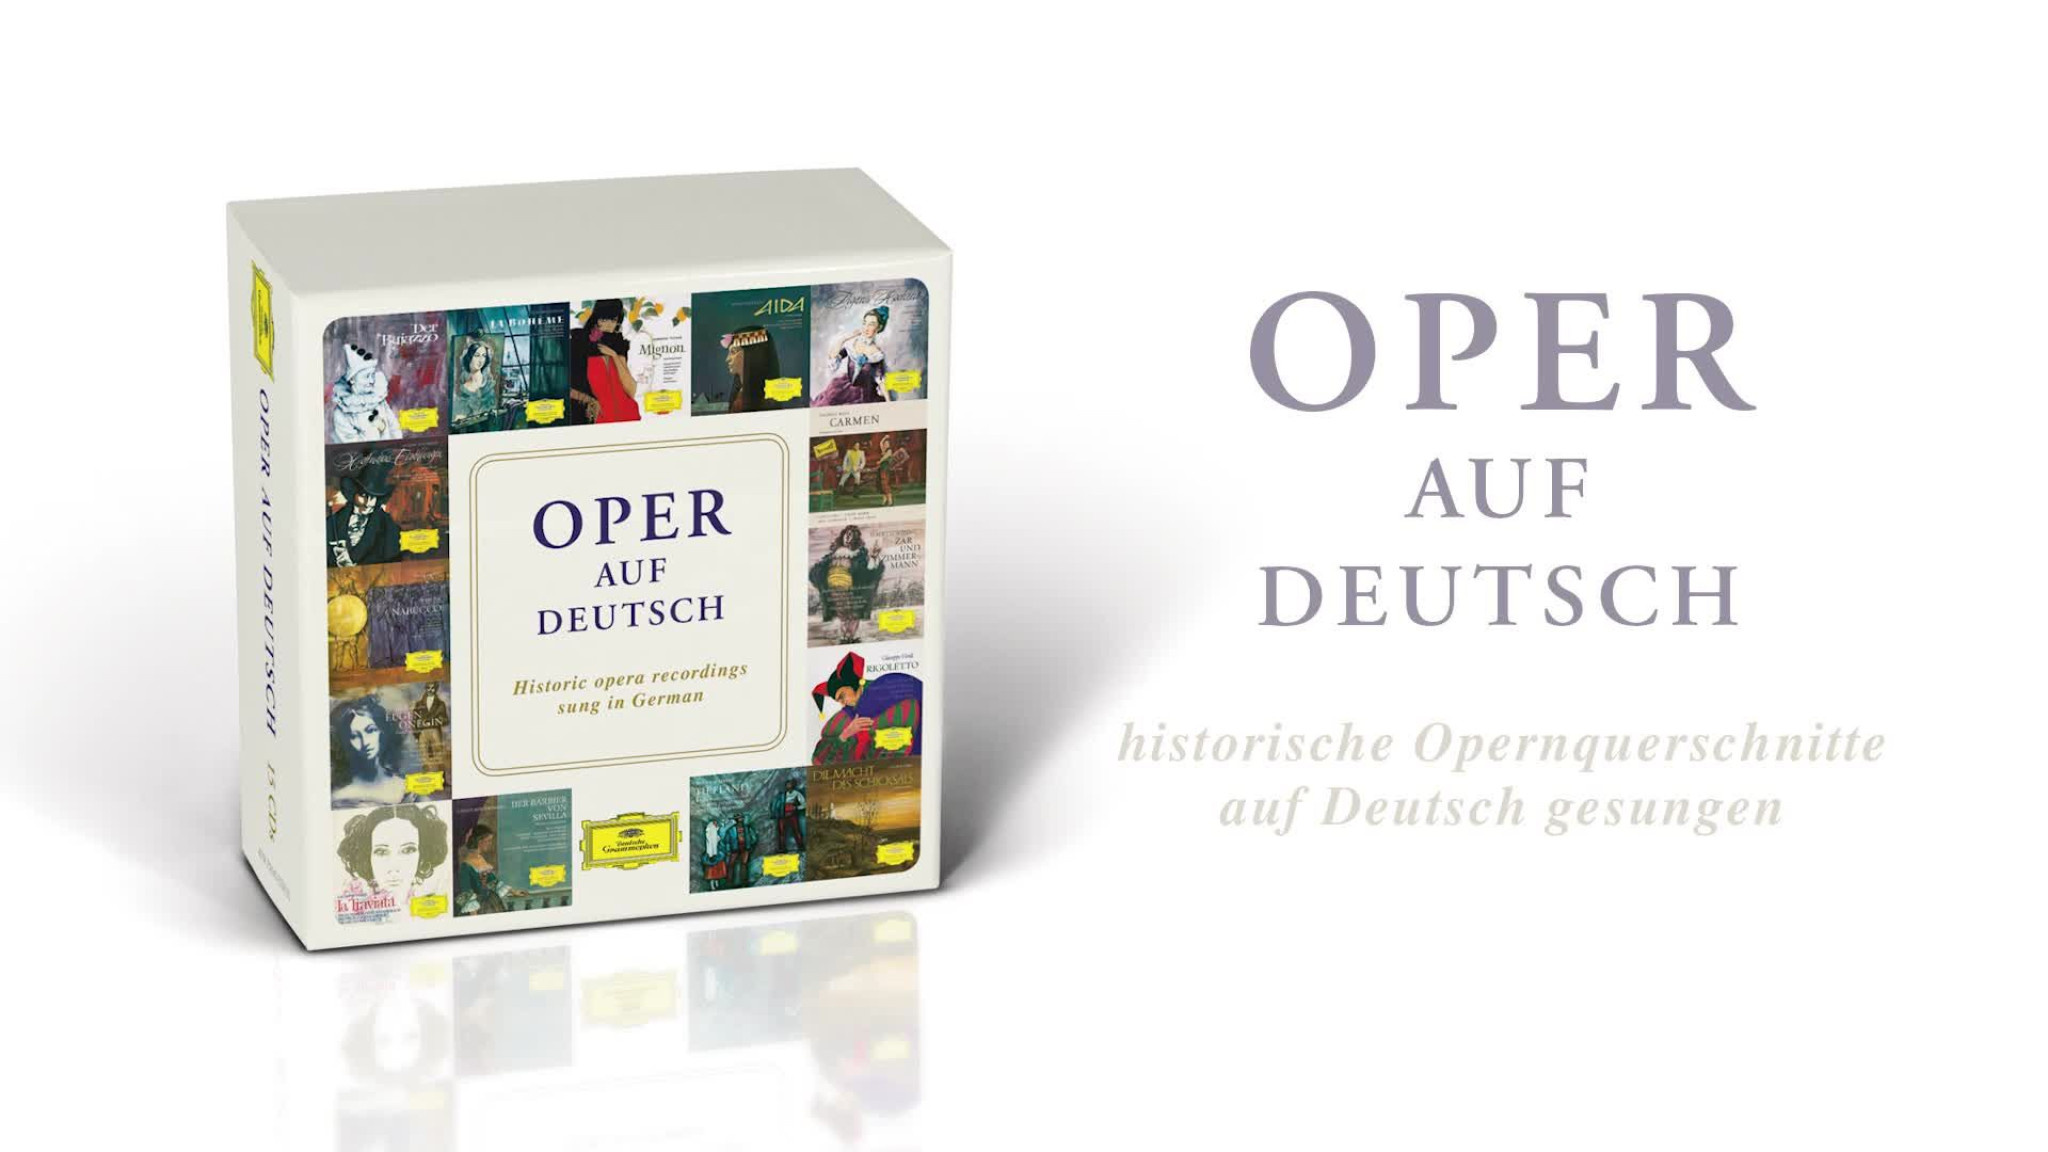 Oper auf Deutsch (Trailer)